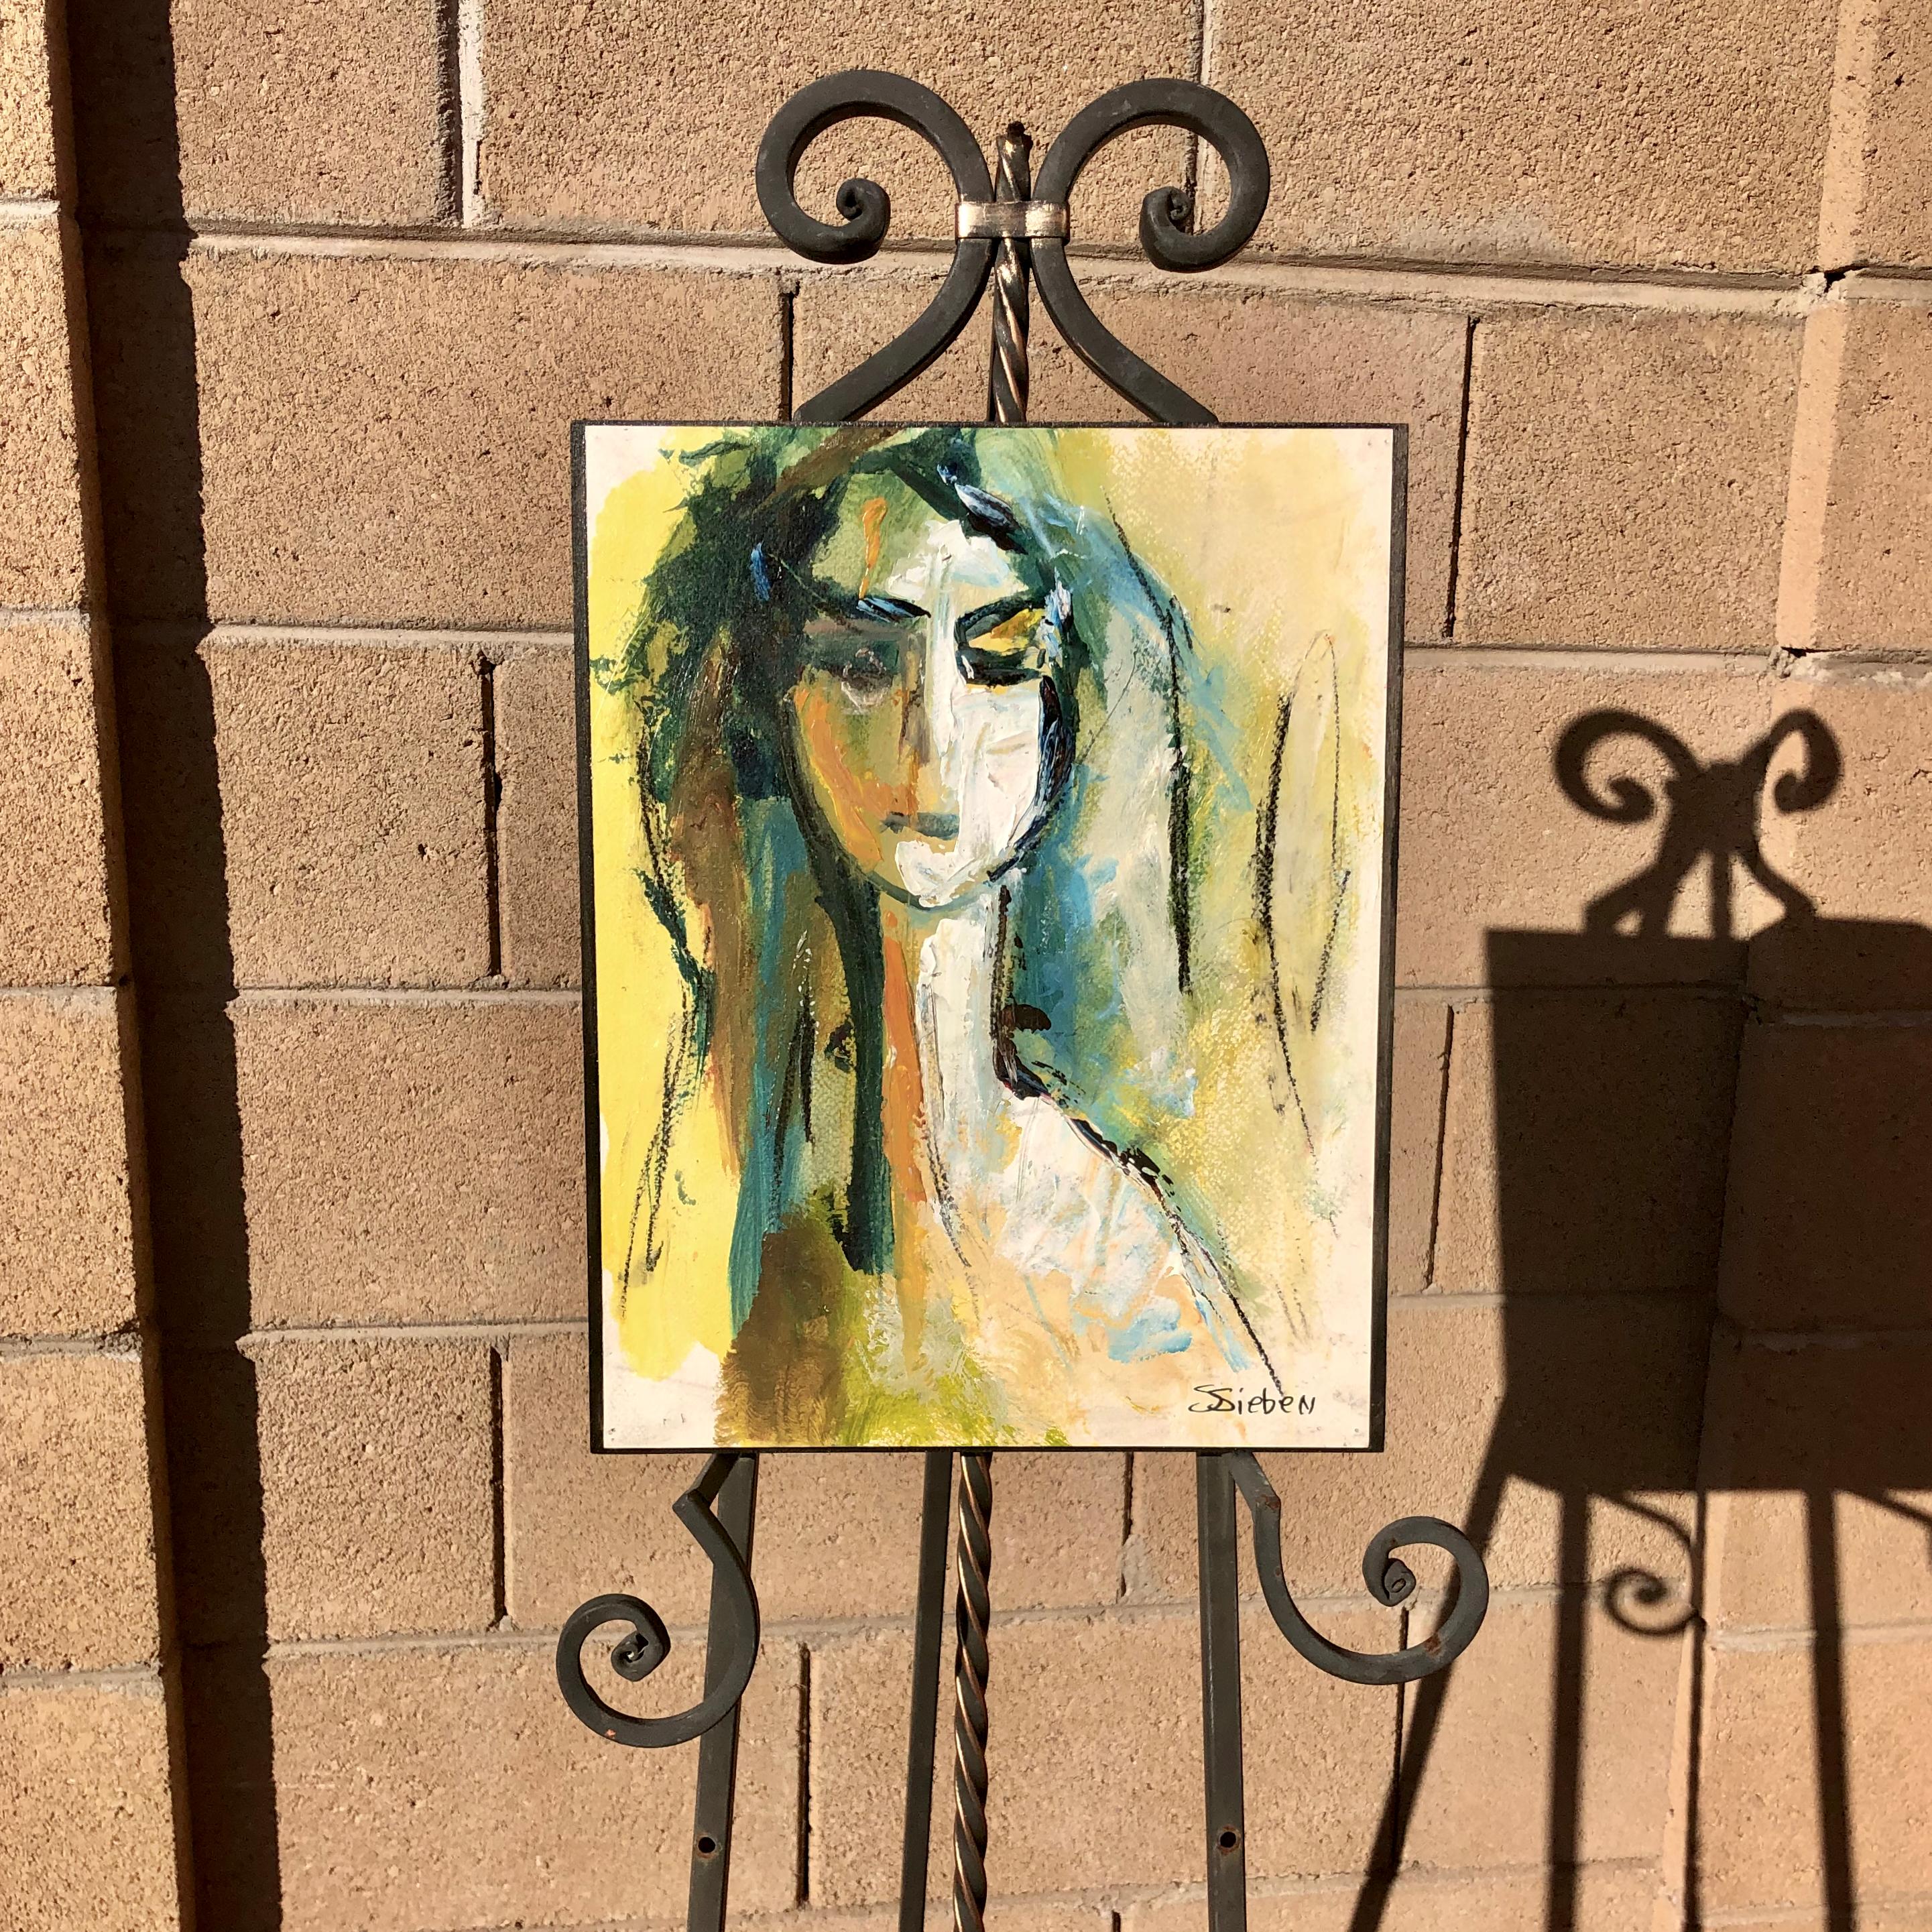 <p>Commentaires de l'artiste<br>Cette peinture représente une femme à l'expression ambiguë, ajoutant une ambiance mystérieuse à l'œuvre. Les mèches bleues dans ses cheveux et l'ombre sur son visage créent un contraste visuel avec l'arrière-plan